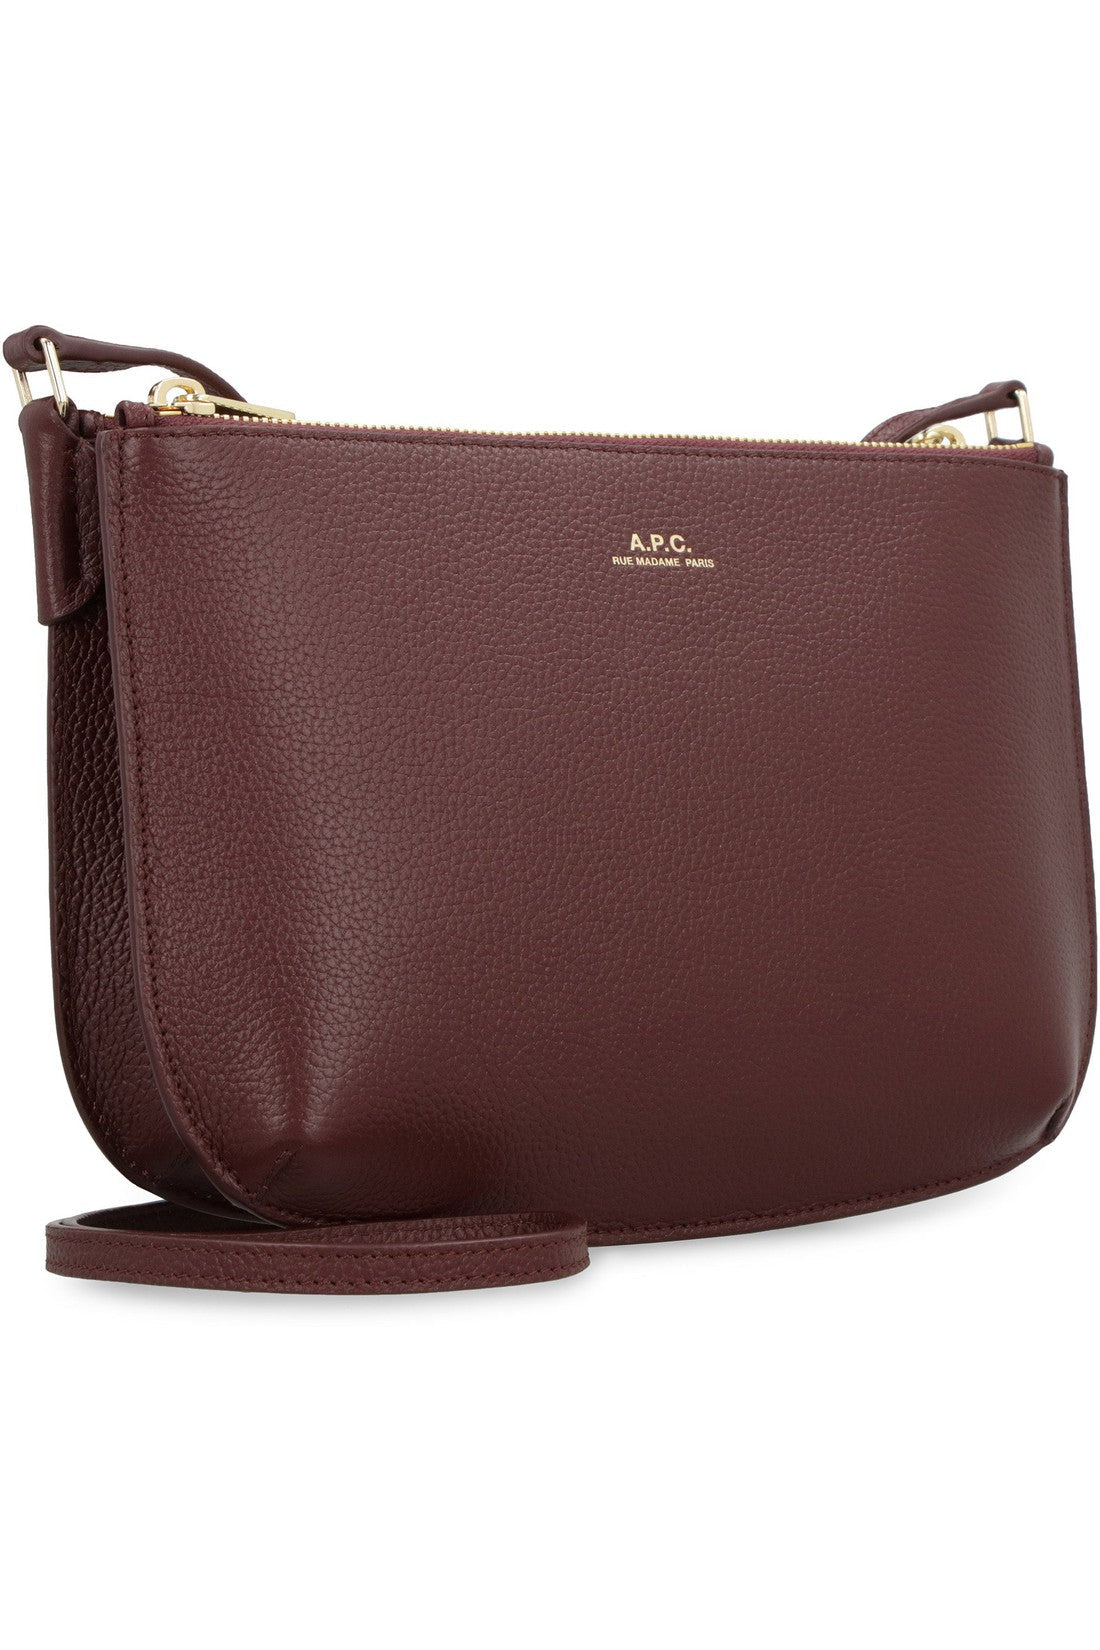 A.P.C.-OUTLET-SALE-Sarah leather crossbody bag-ARCHIVIST